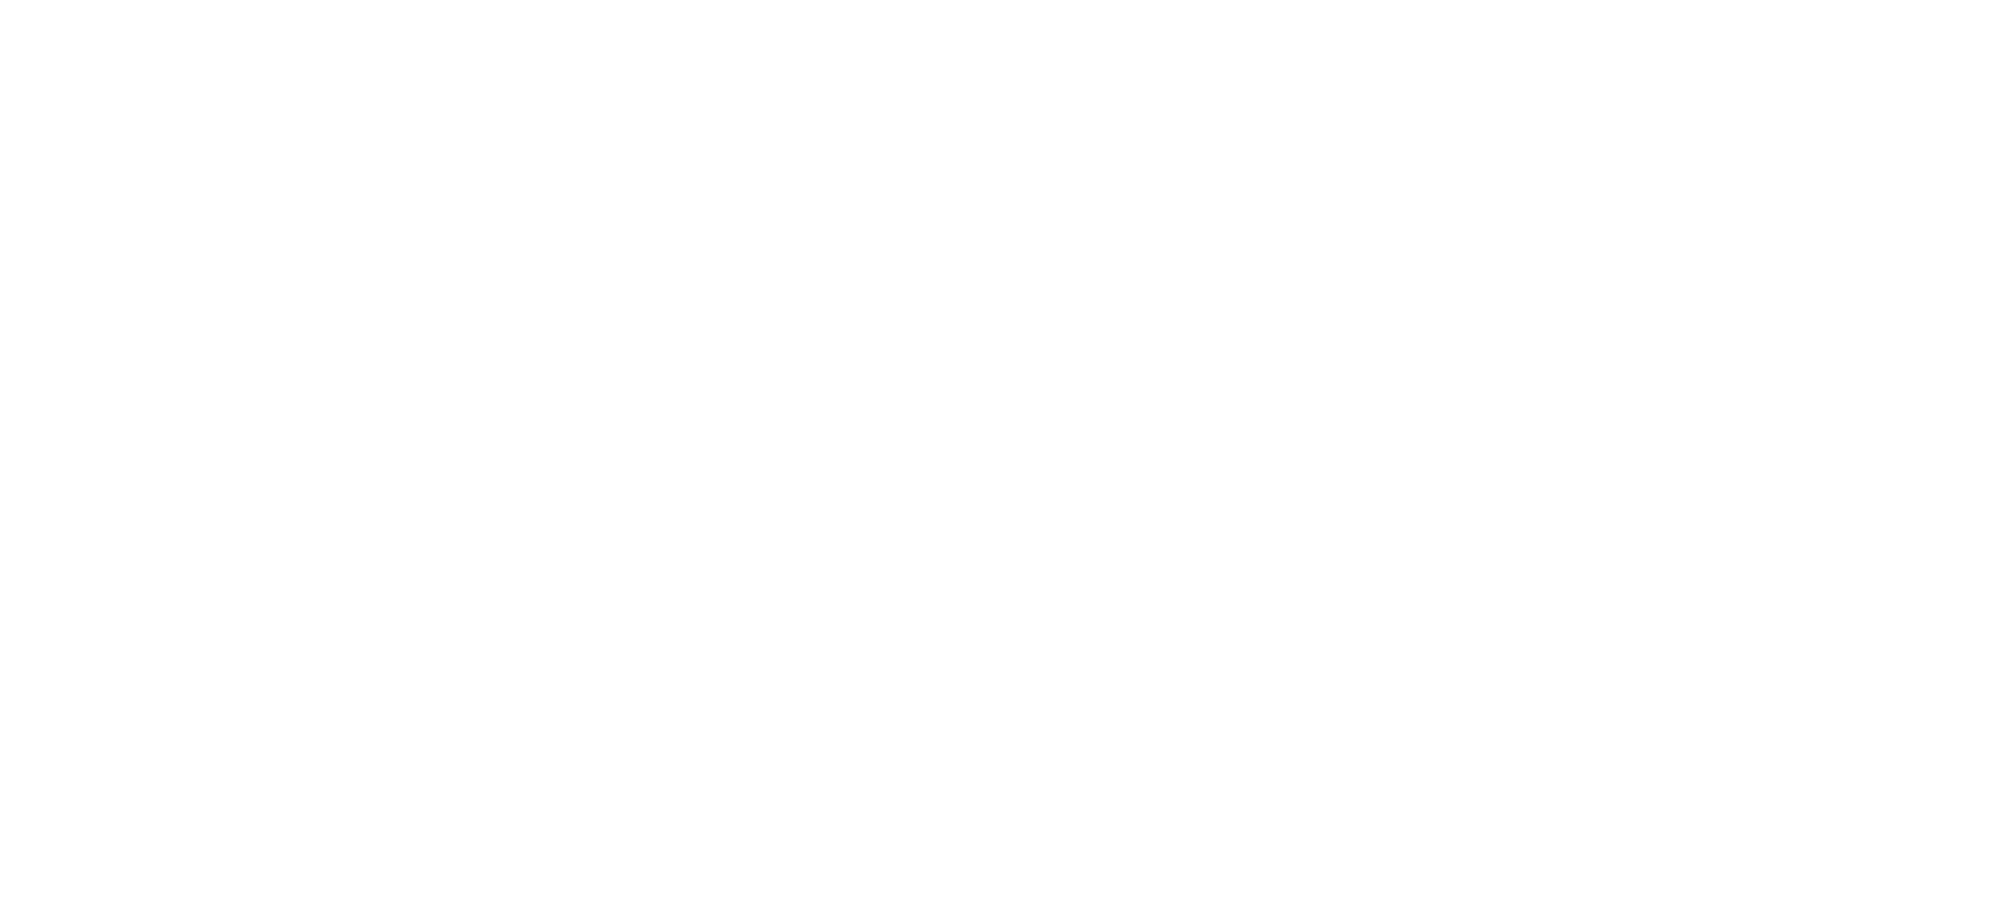 FIZMO logo